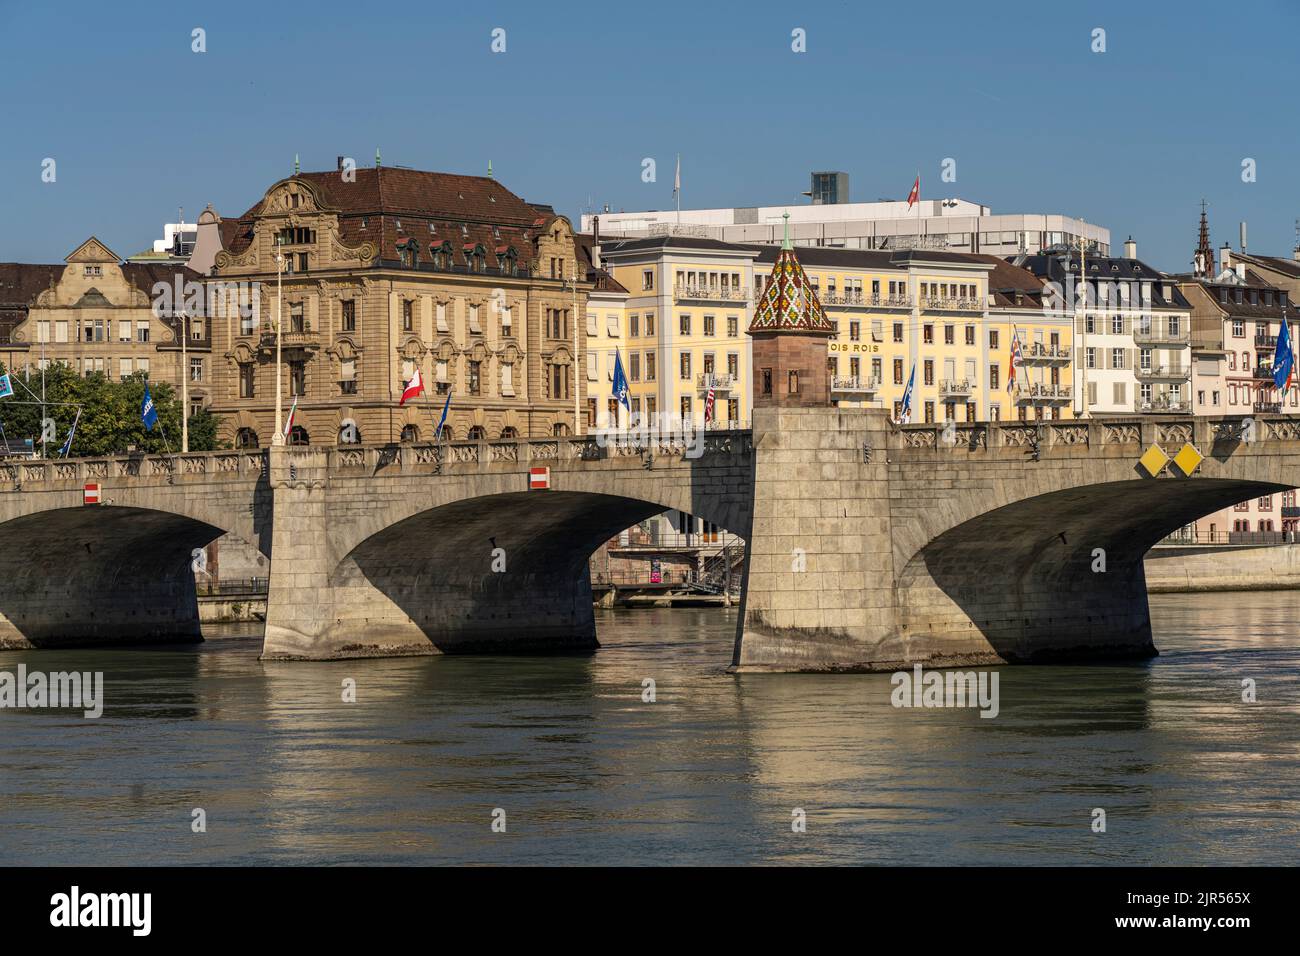 Die Mittlere Brücke und der Rhein in Basel, Schweiz, Europa |   The Middle Bridge and the Rhine river in Basel, Switzerland, Europe Stock Photo